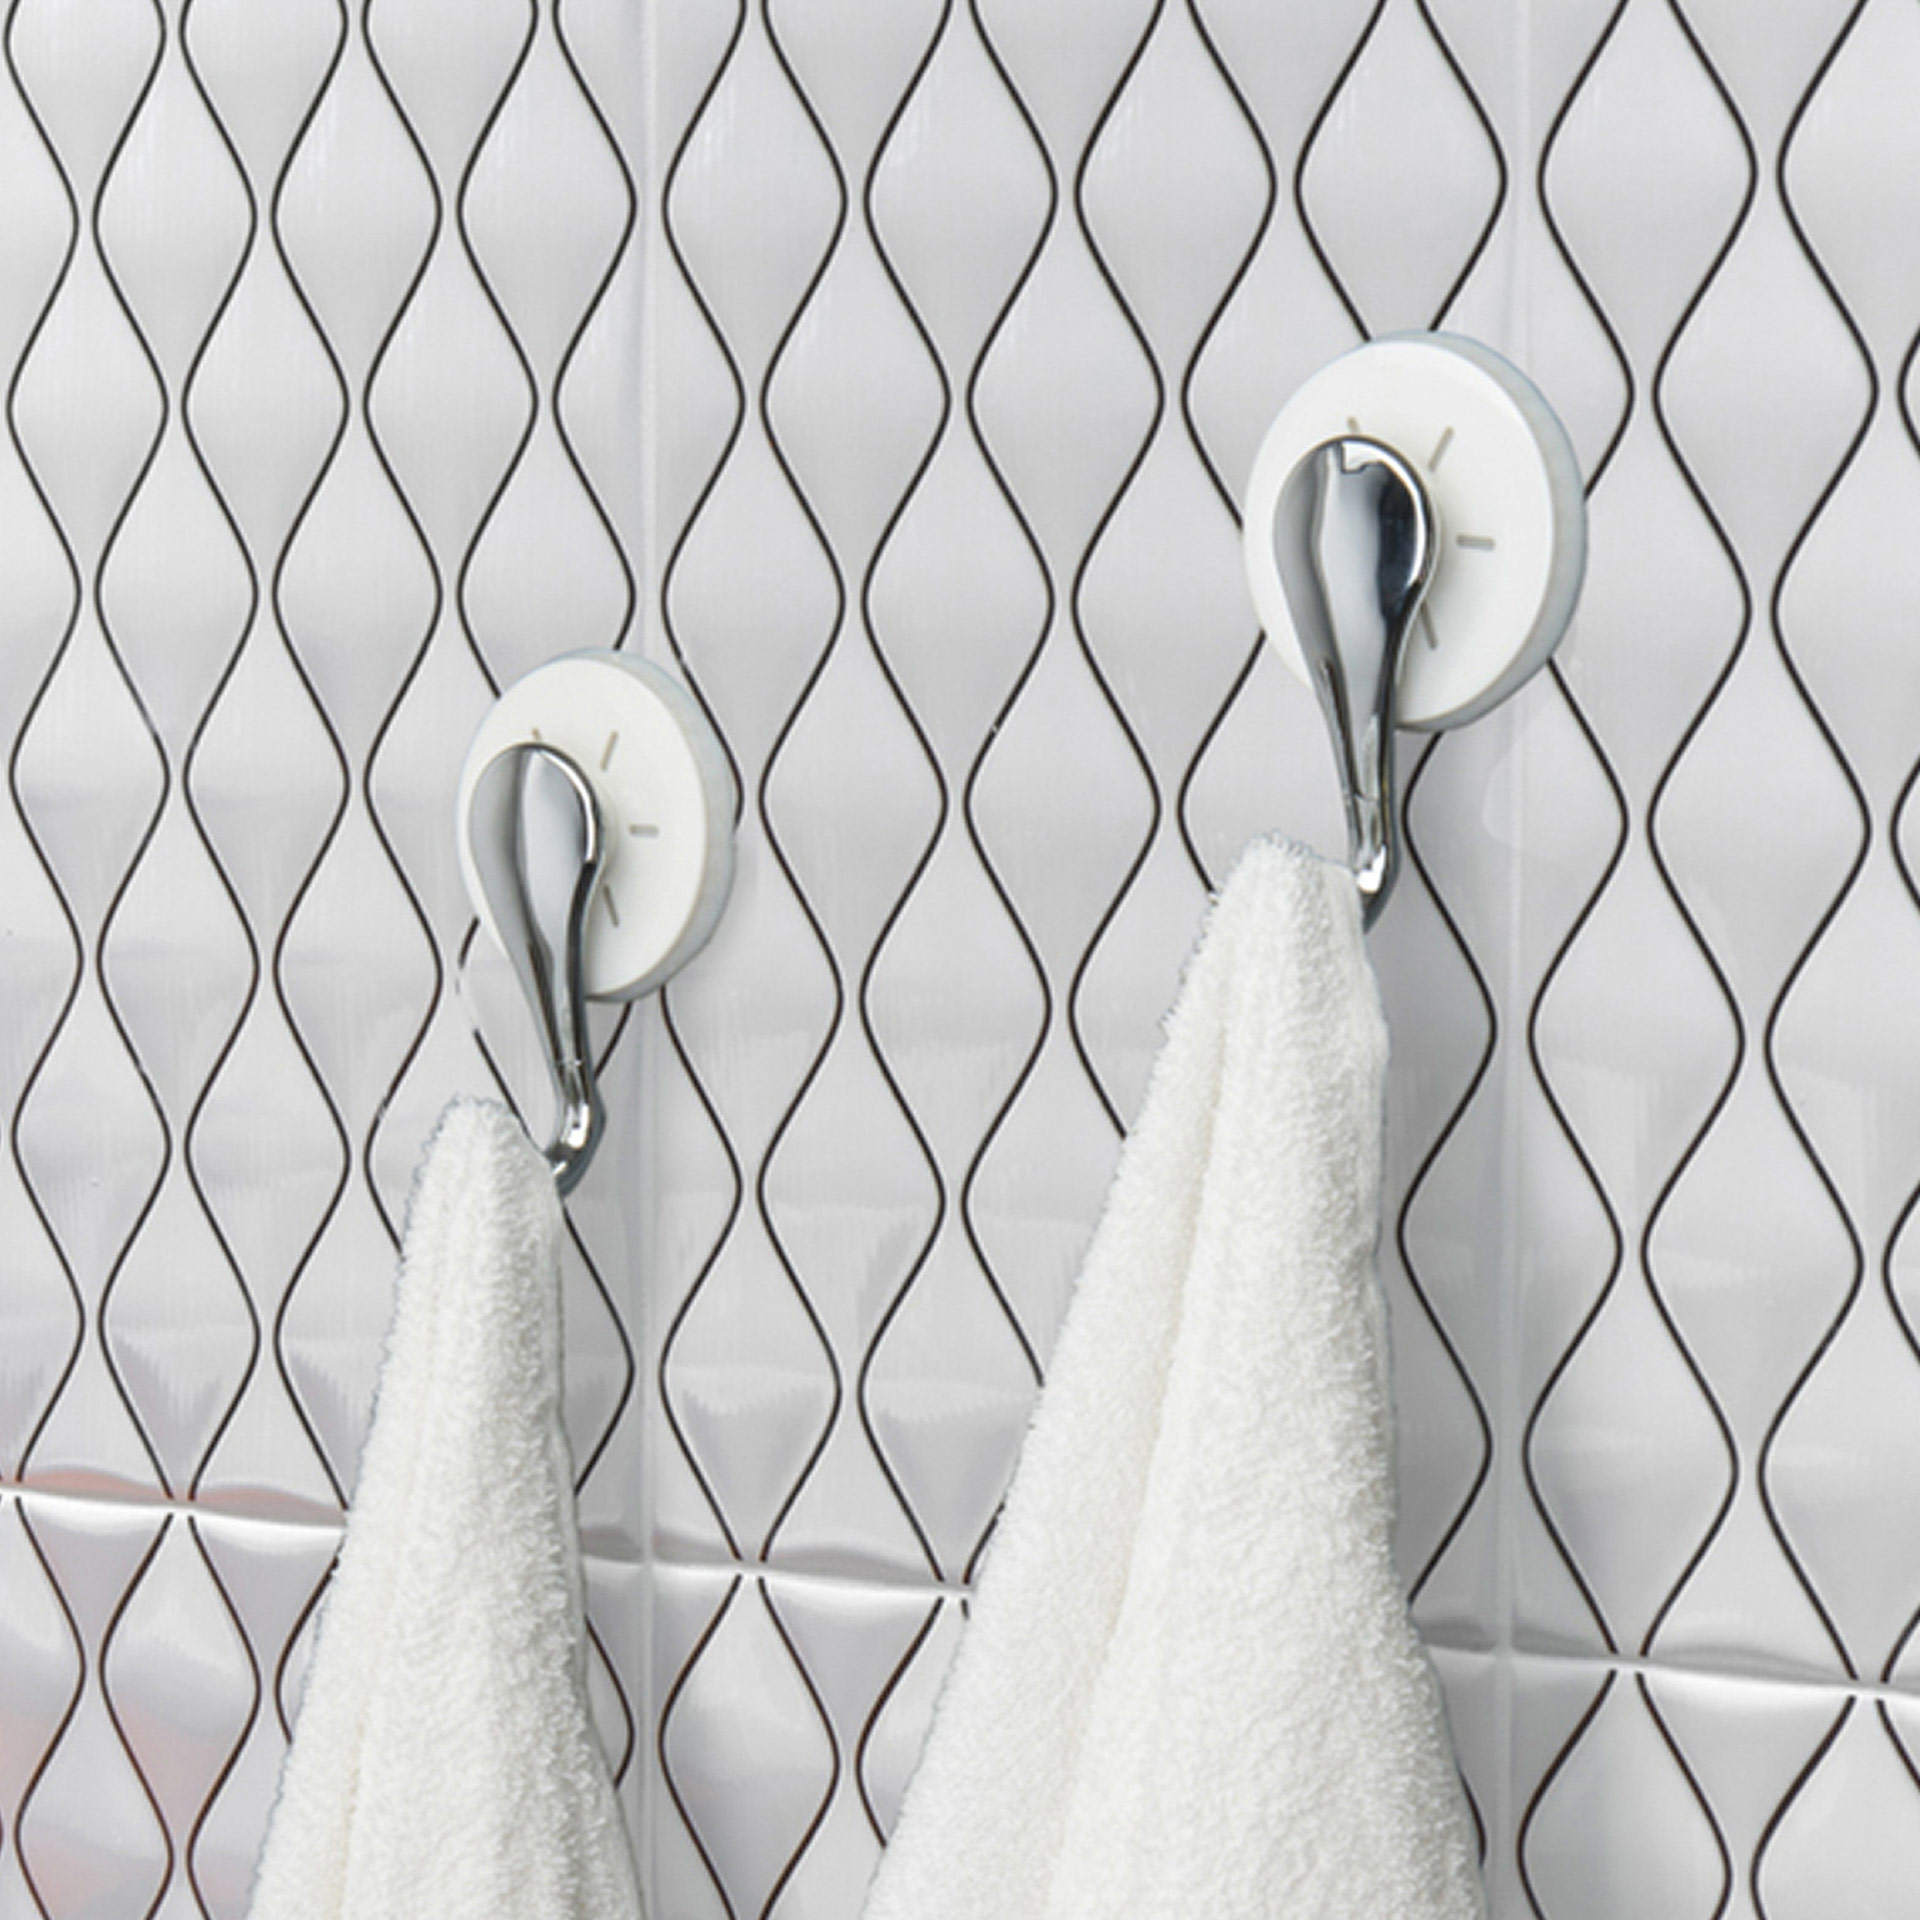 Acquista Ganci da cucina a ventosa per asciugamani Ganci adesivi resistenti  Ganci da parete per bagno Ganci in PVC resistente